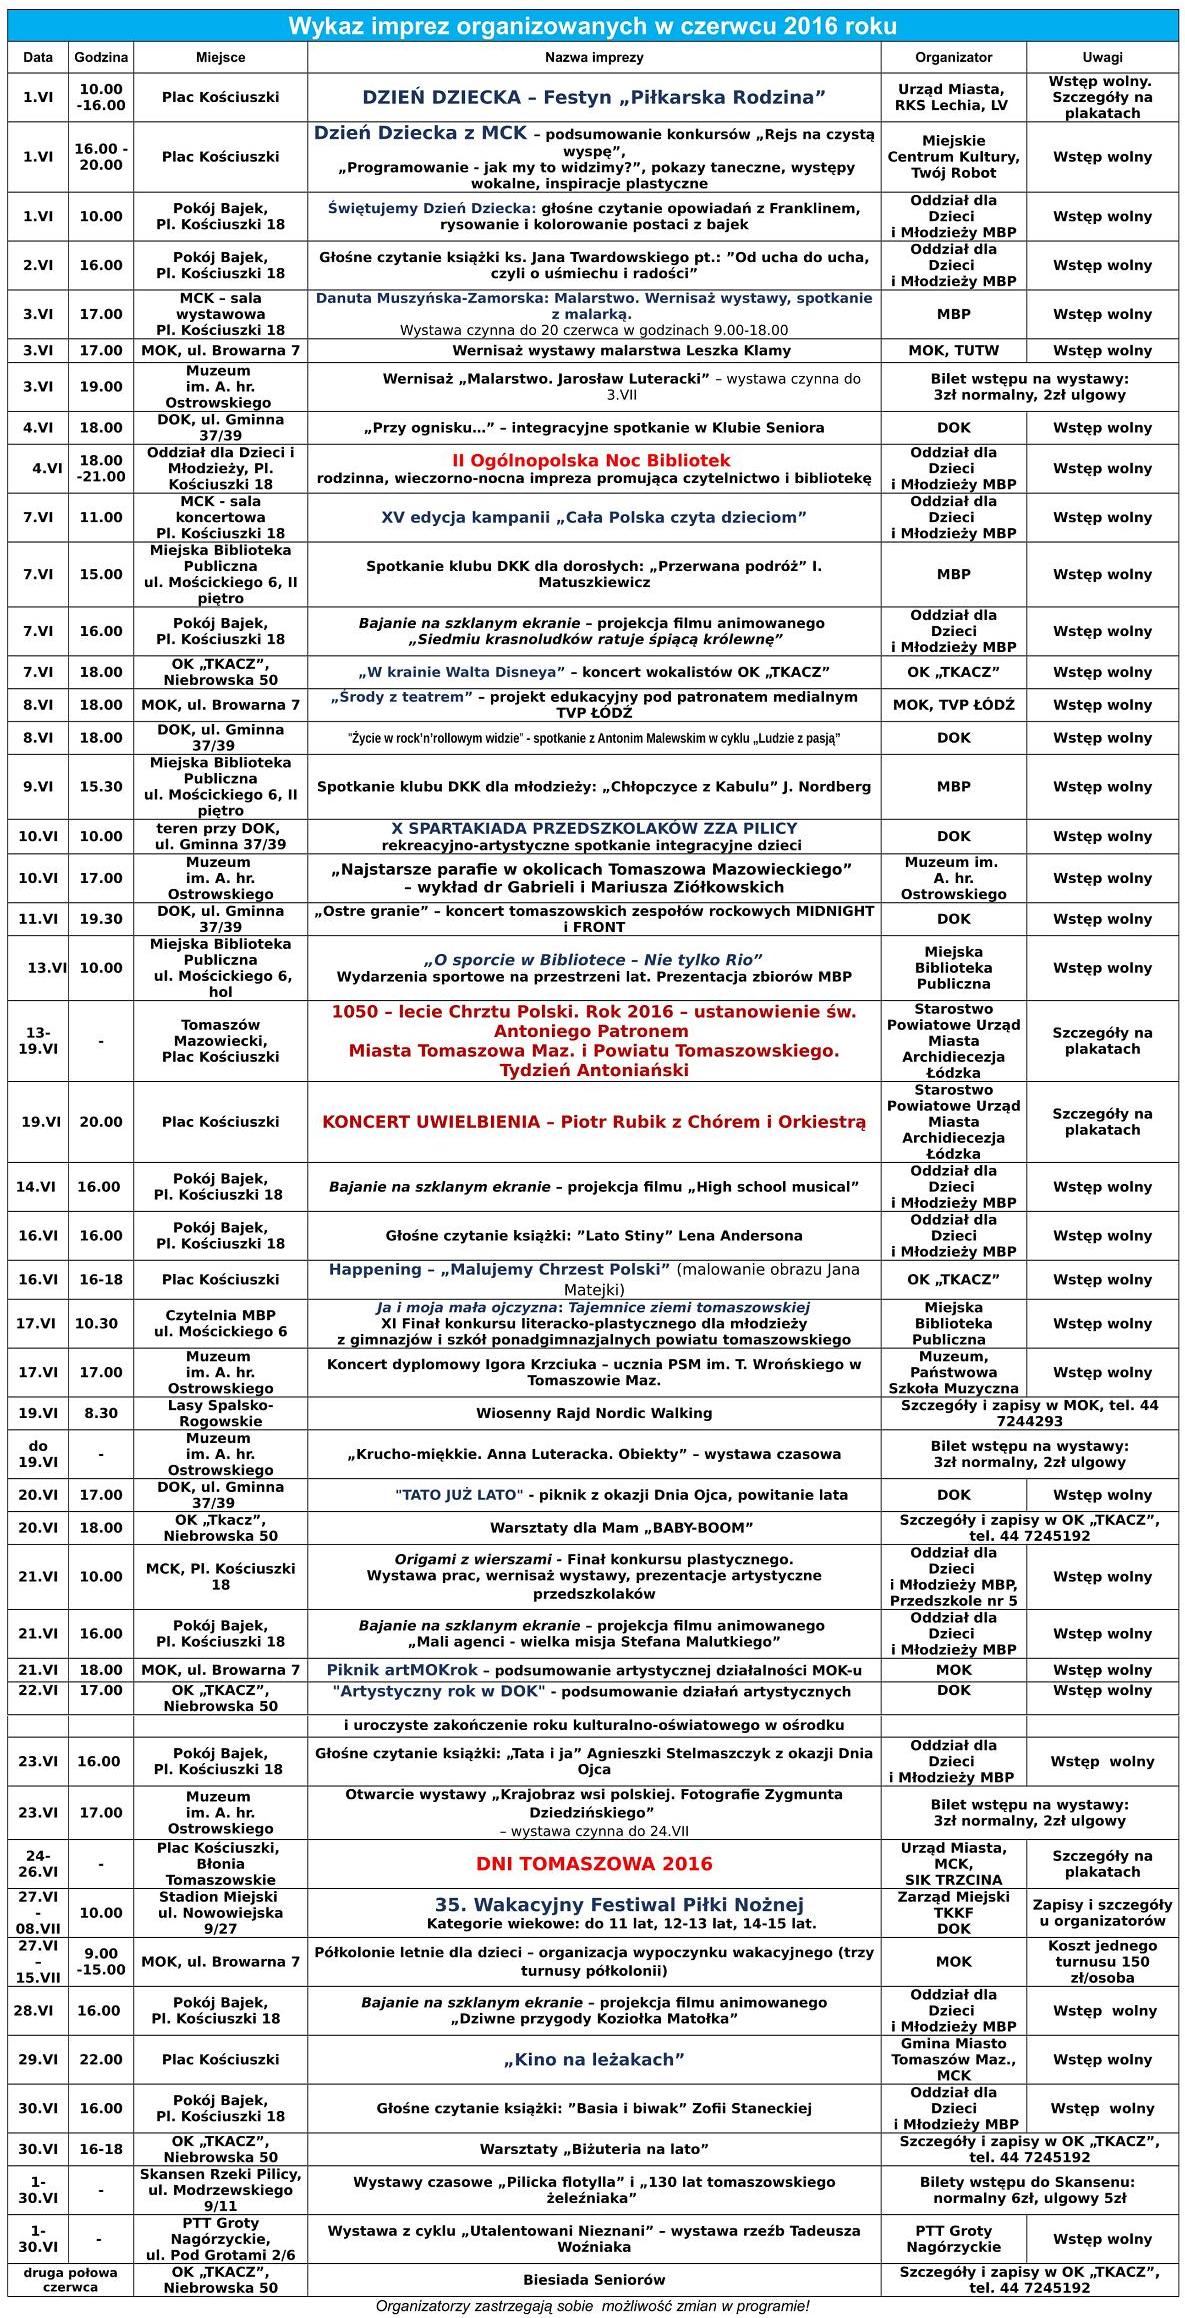 Wykaz imprez organizowanych w czerwcu 2016 roku